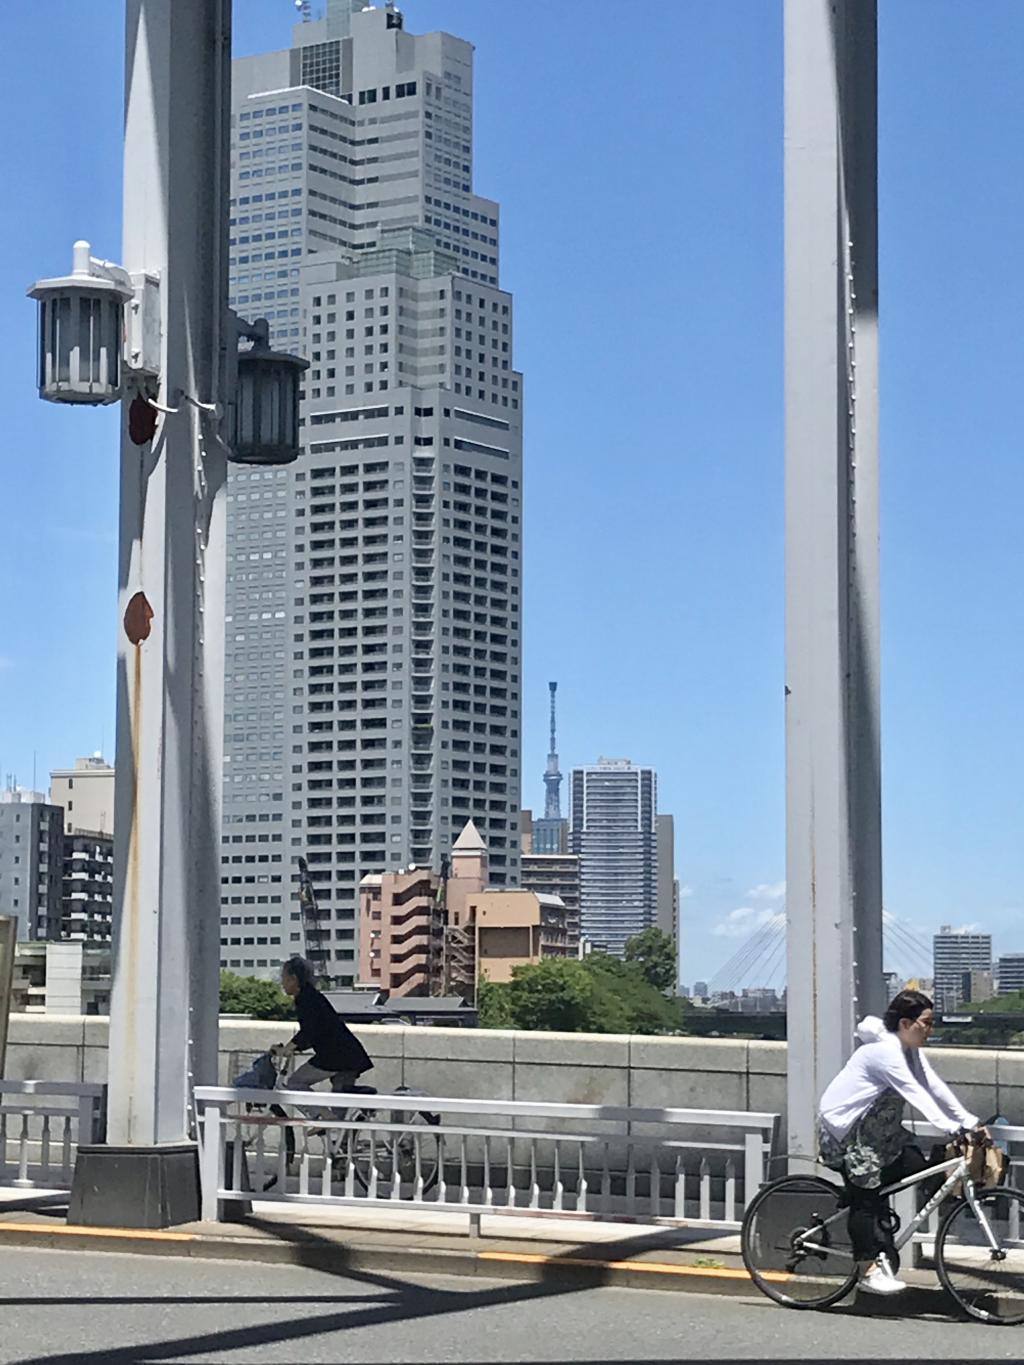  二大タワーを同時に撮影できるお得スポット～勝鬨橋～